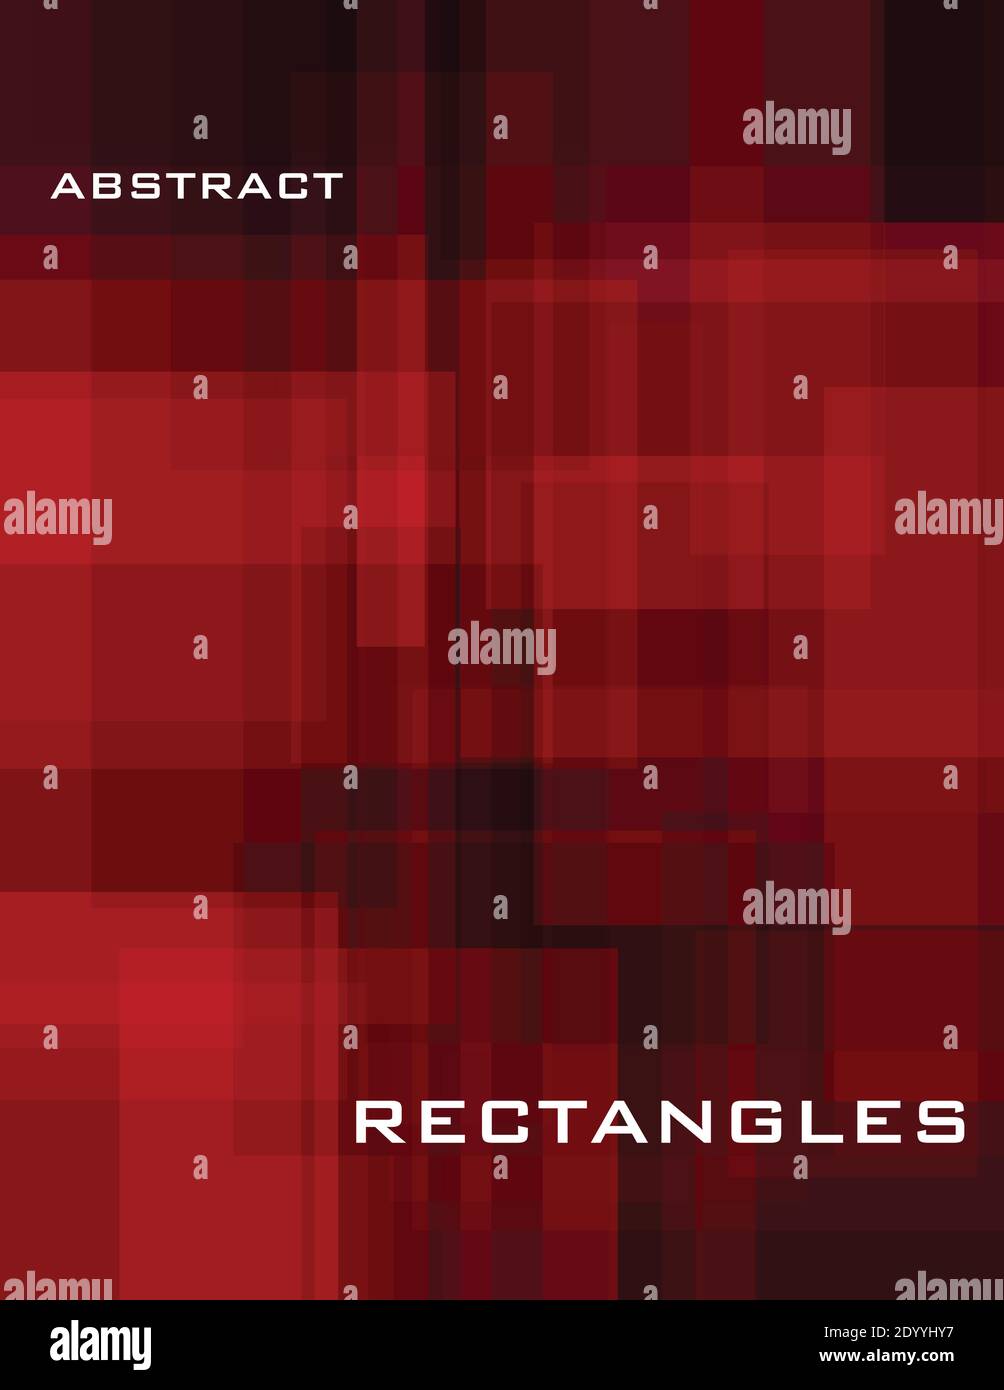 Abstrakter geometrischer Hintergrund in Schwarz und Rot mit Rechtecken. Dunkelrotes Einband-Design. Einfache rote und schwarze Vektorgrafik Muster Stock Vektor